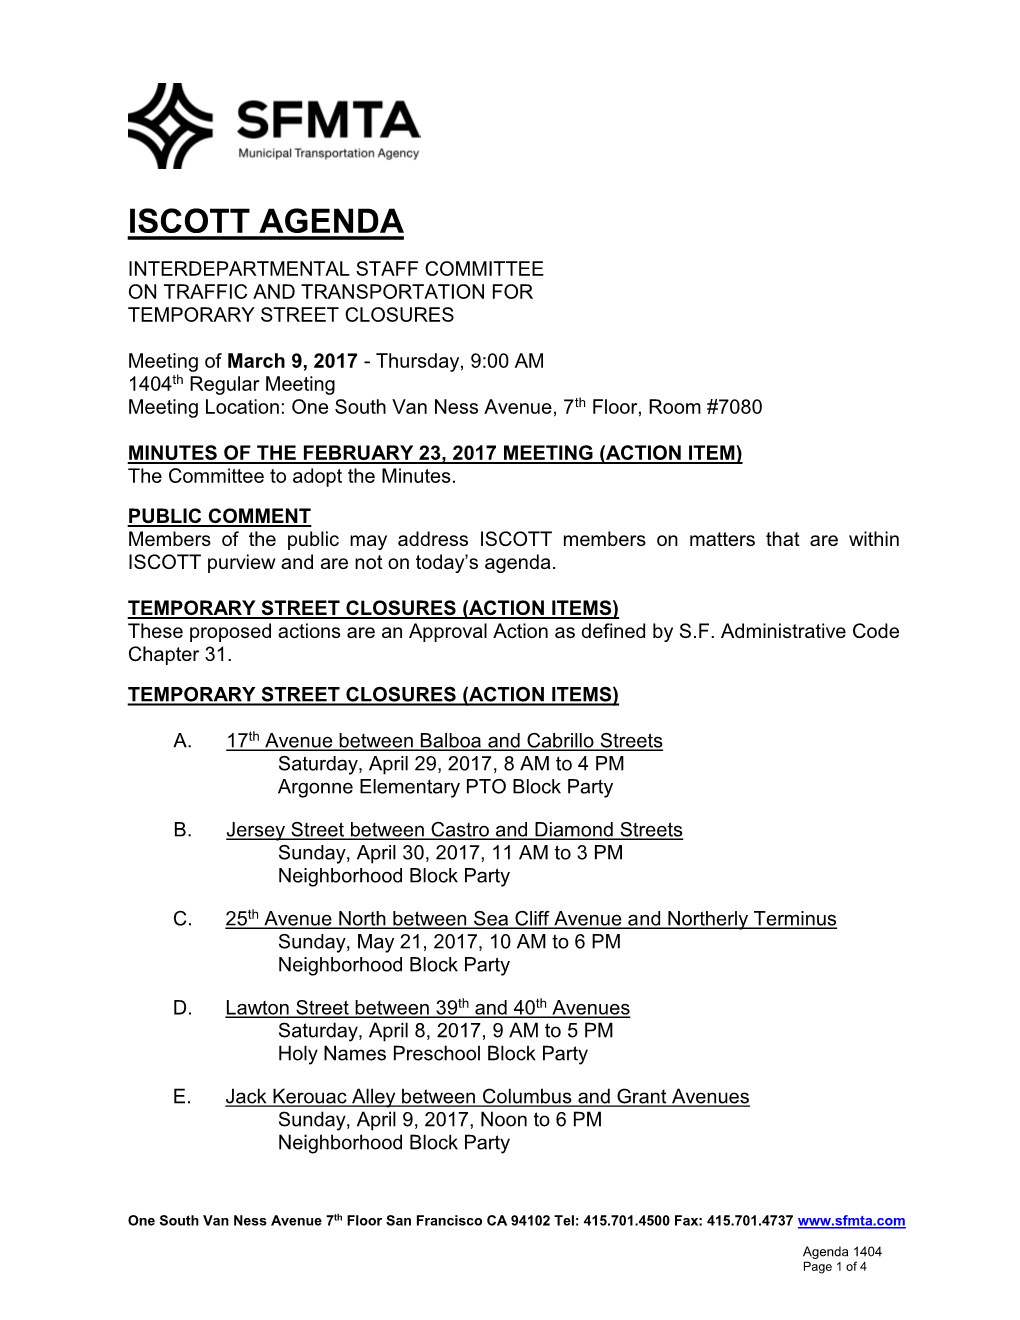 ISCOTT Agenda 1404